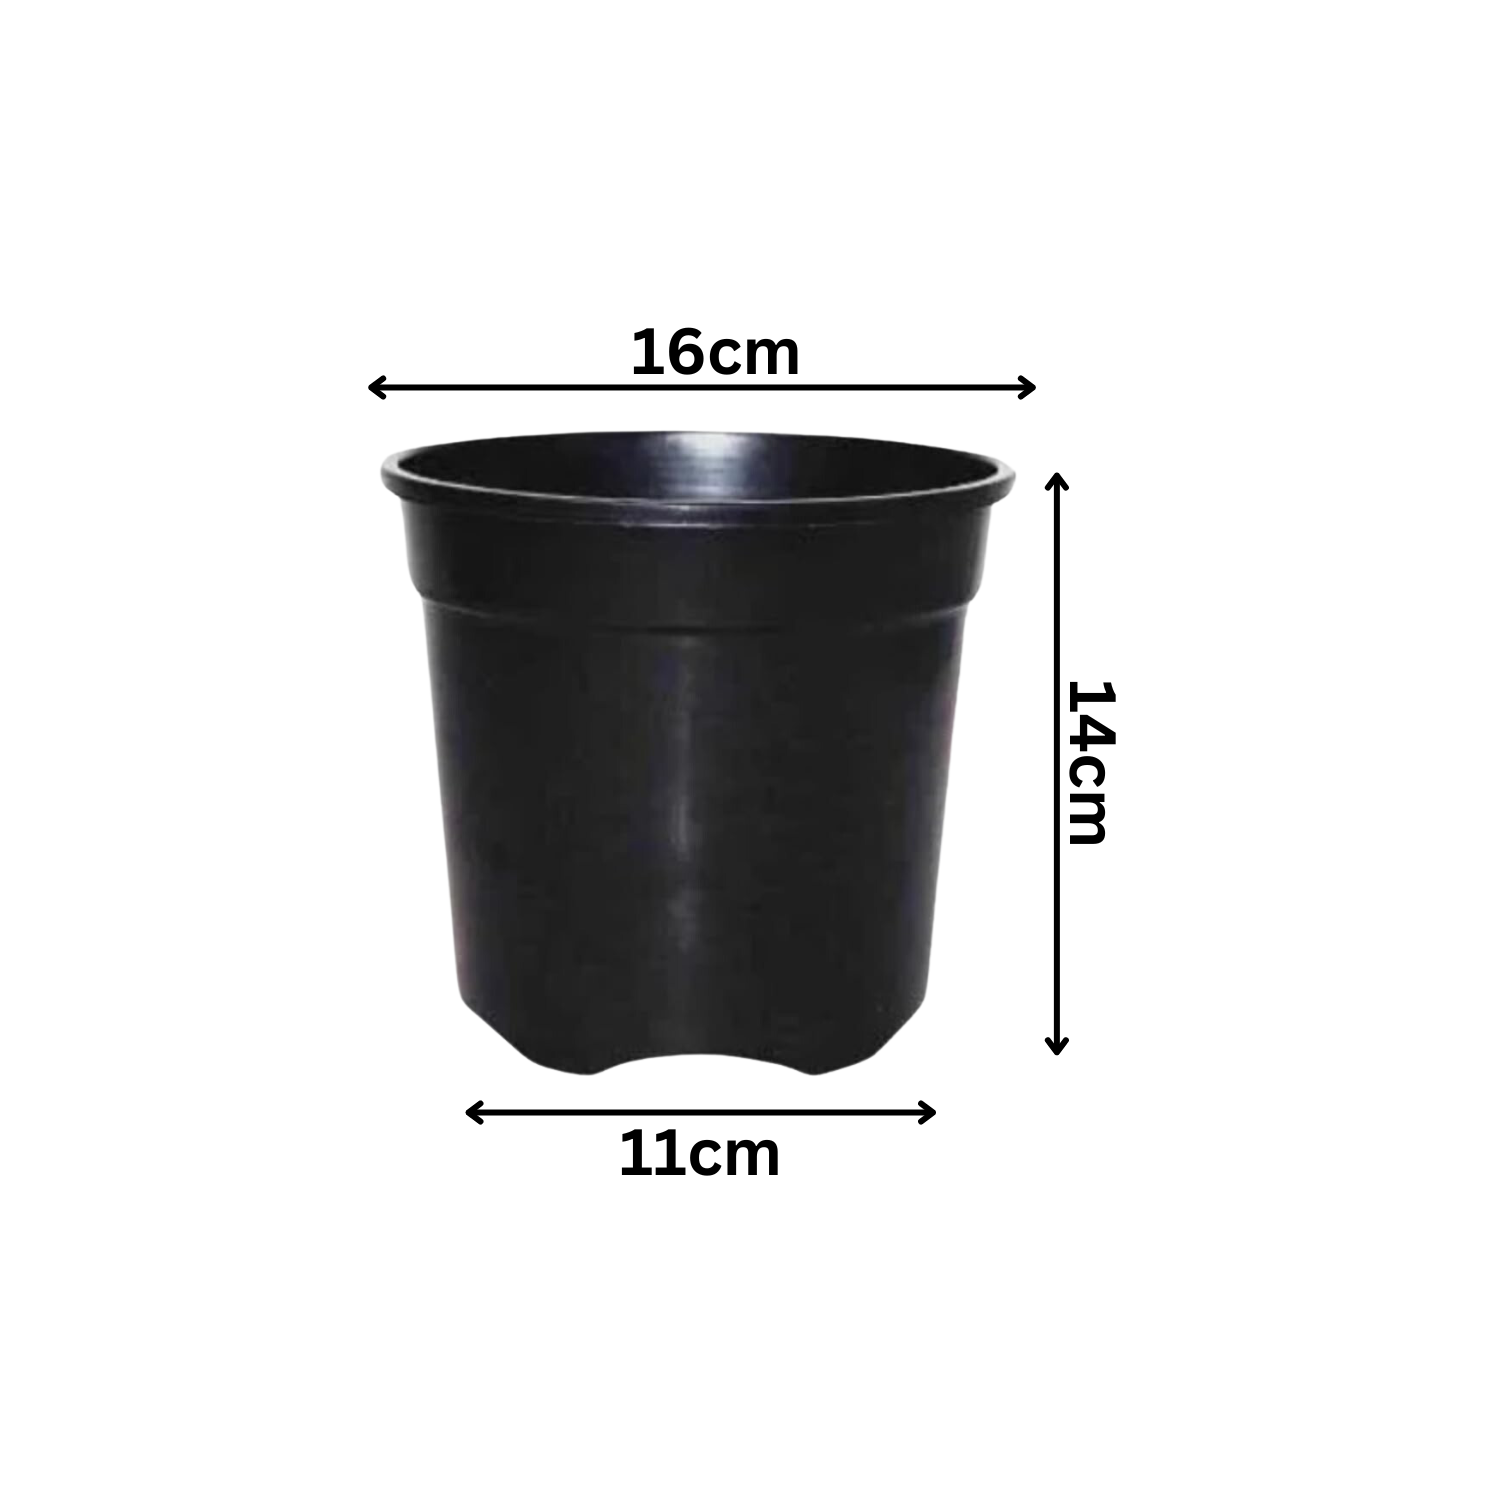 6 Inch Gro Pro Black Plastic Pot for Home & Garden